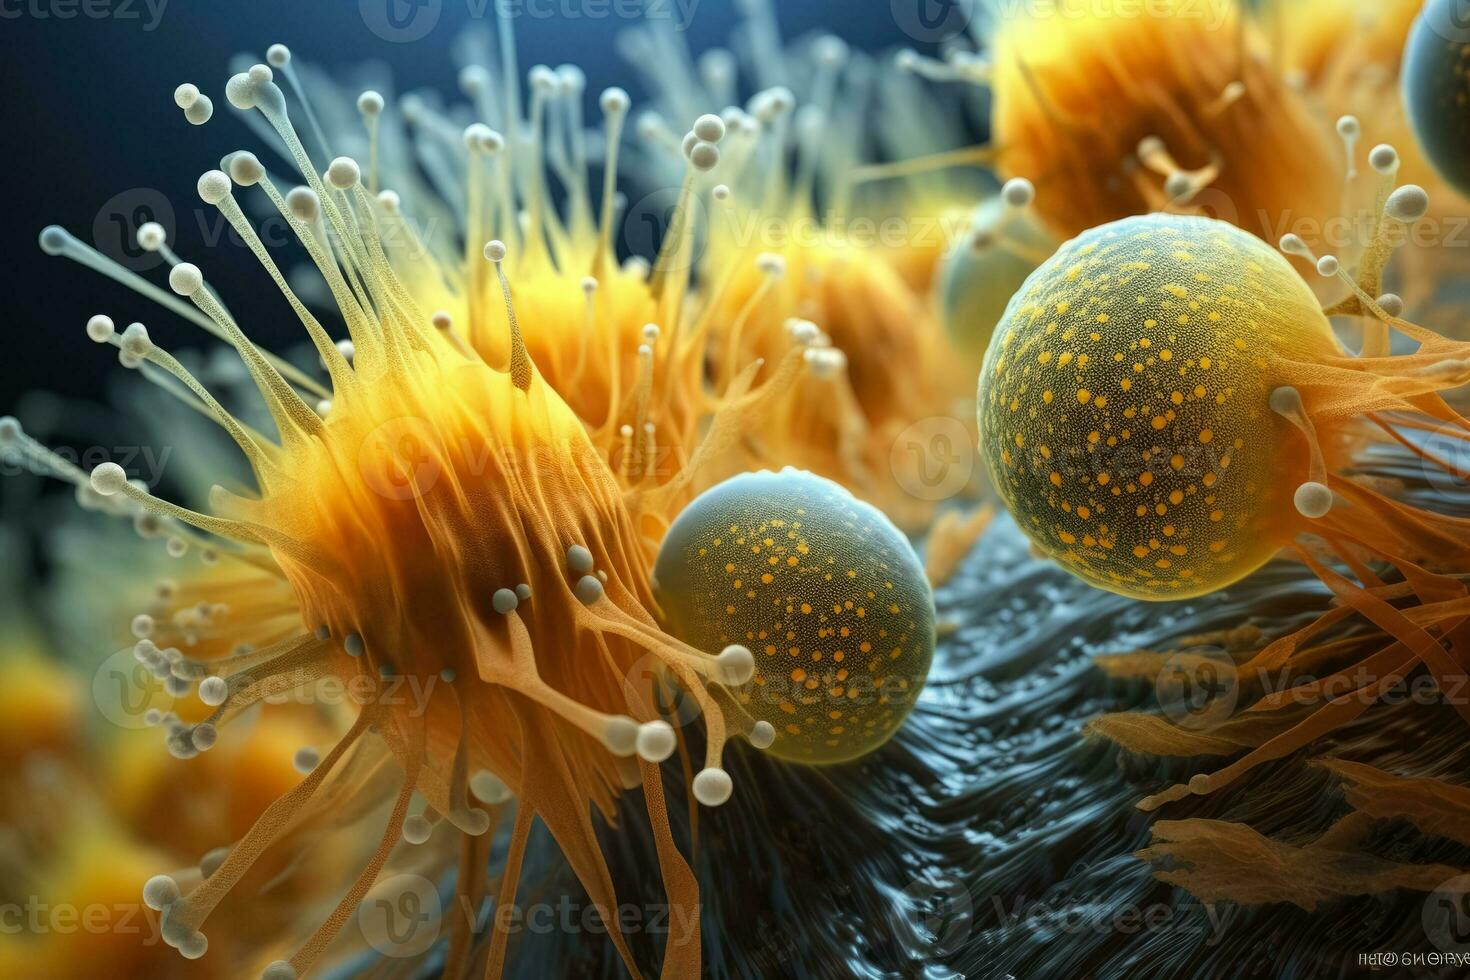 microscopique merveilles haute définition imagerie de diverse pollen céréales dans brillant détail photo